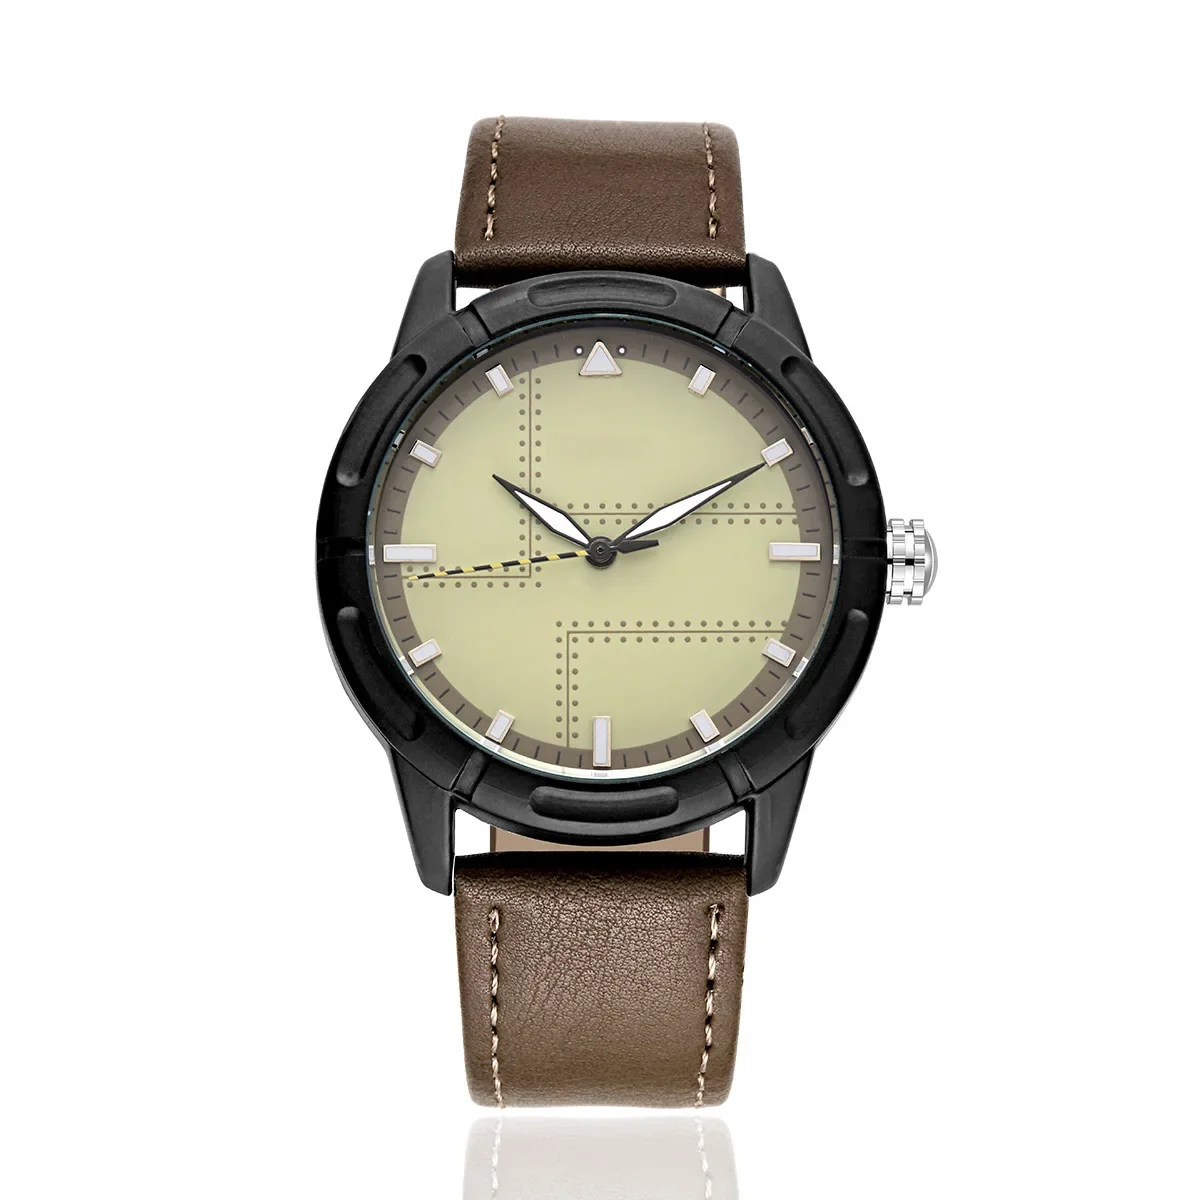 № 2 Модные женские брендовые часы с кожаным ремешком повседневные наручные часы